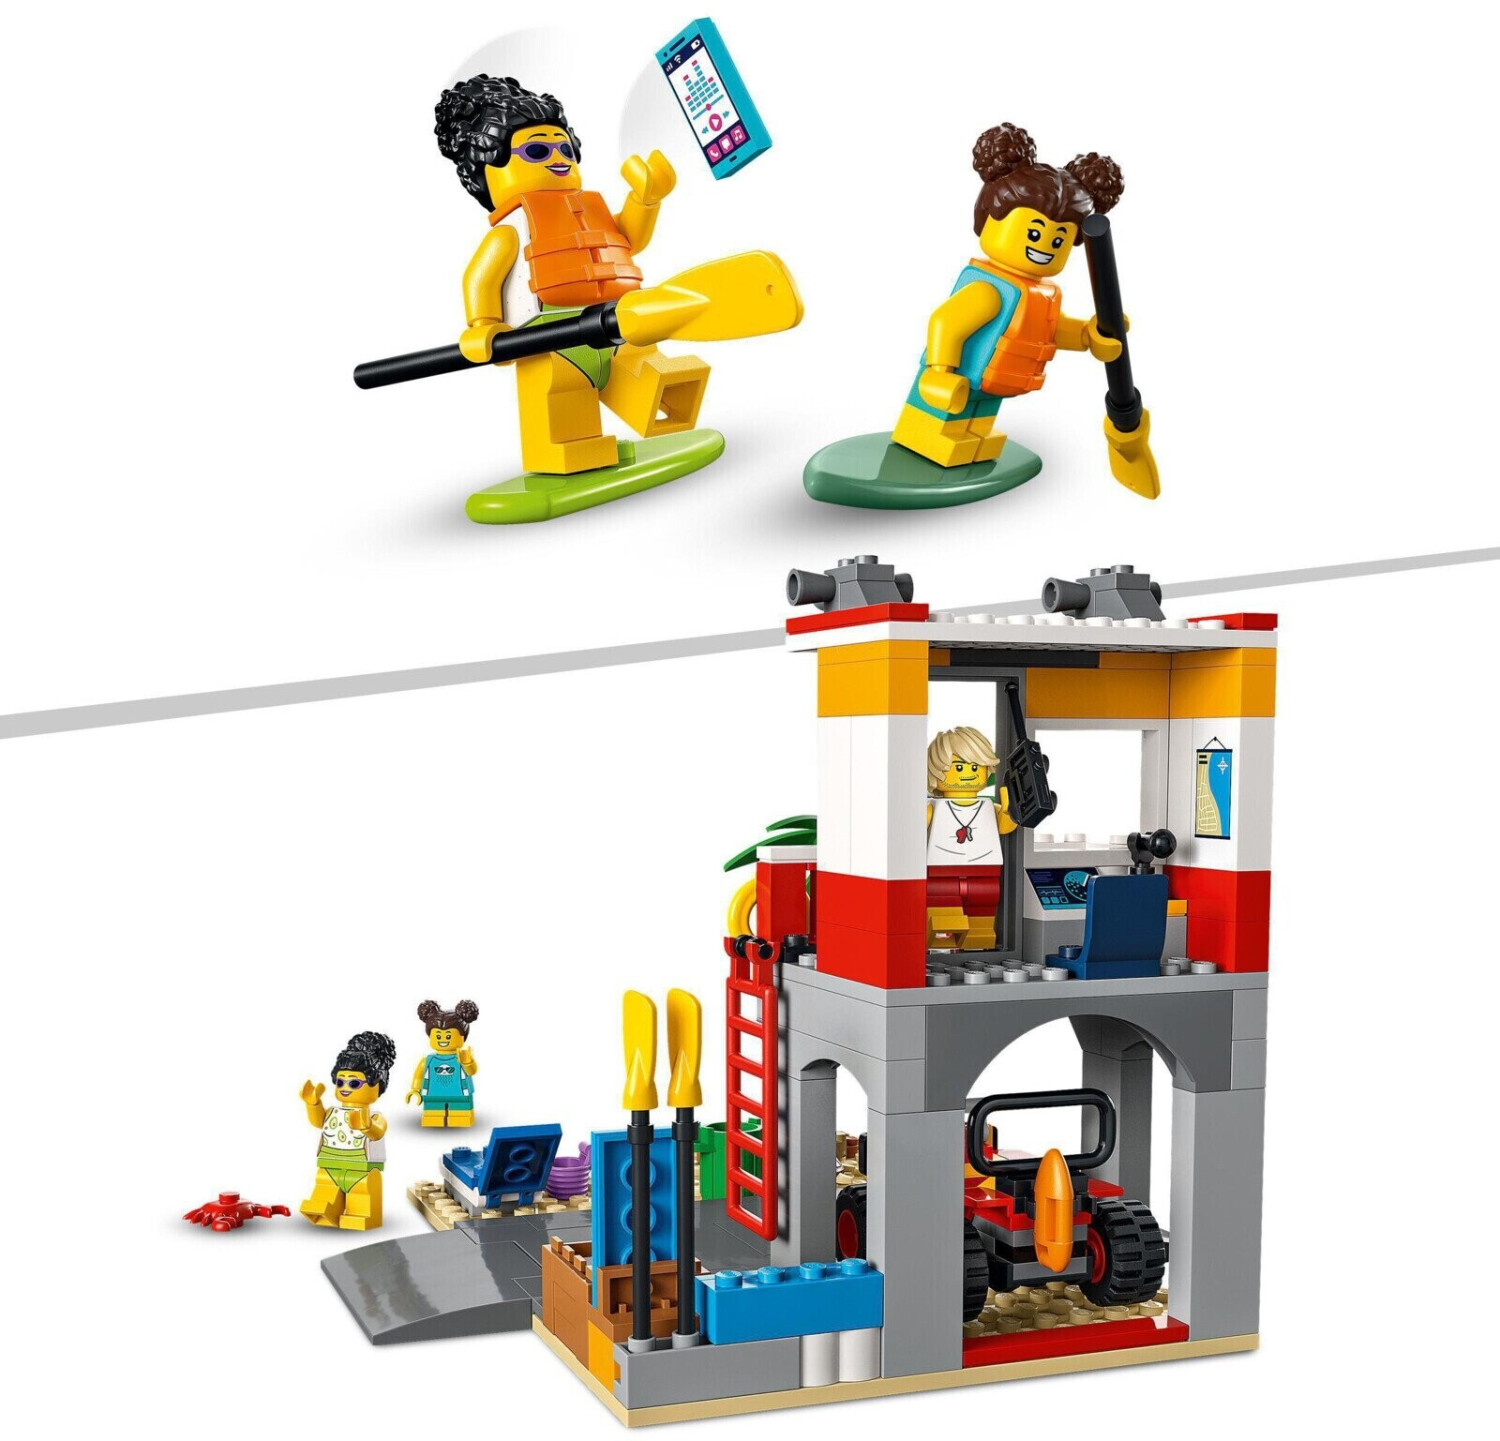 Lego 60328 city le poste de secours sur la plage, jouet de